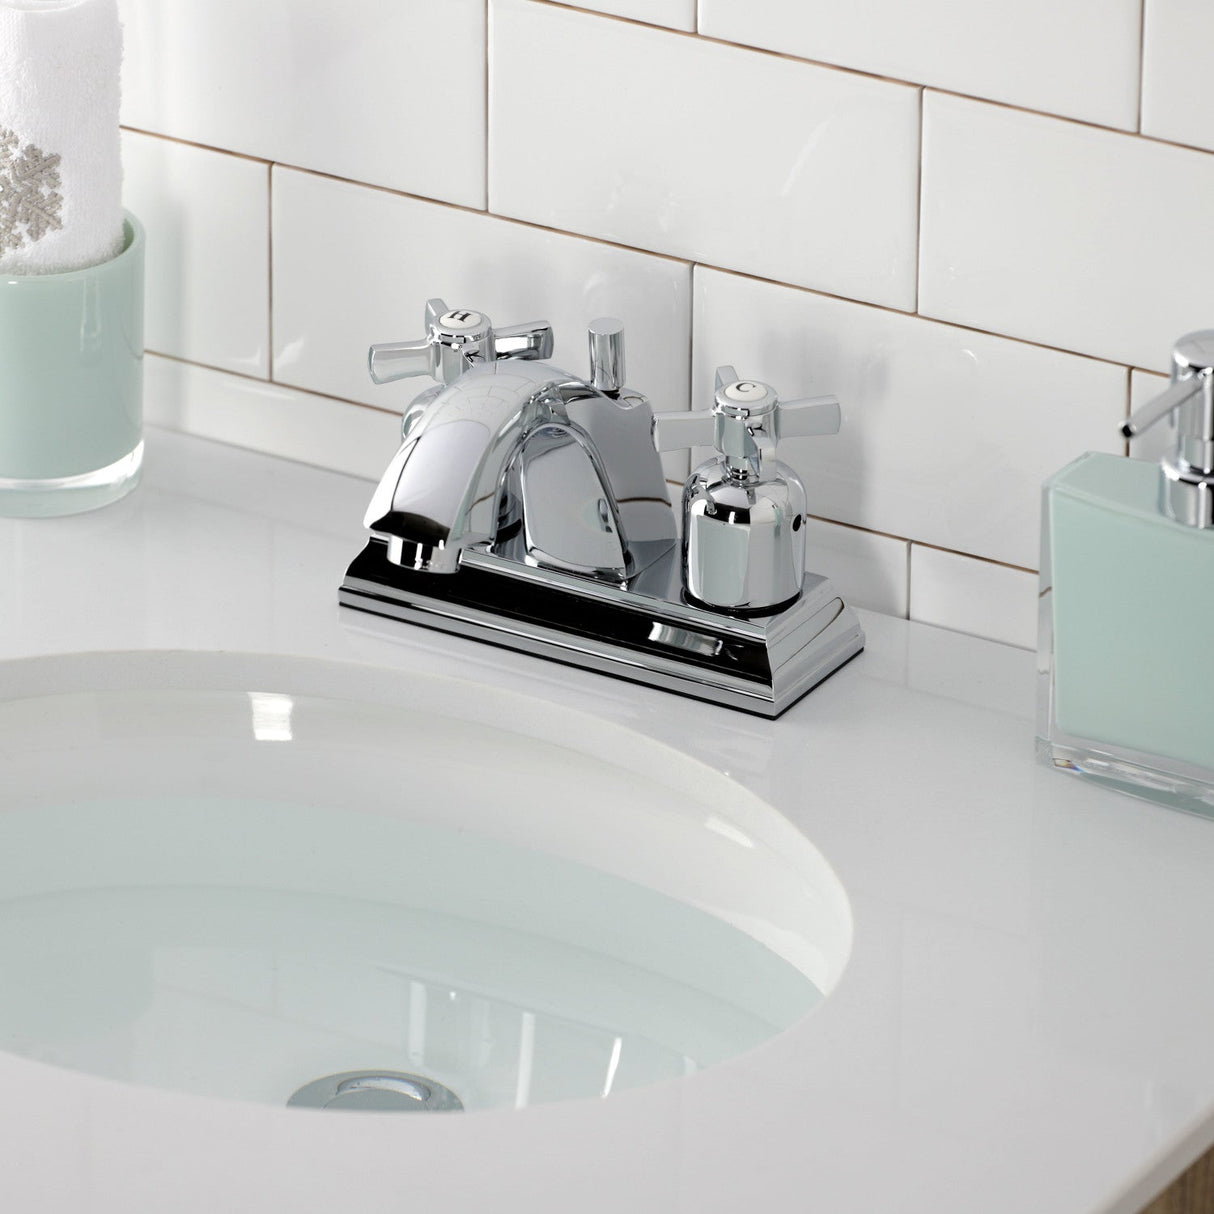 Millennium FSC4641ZX Two-Handle 3-Hole Deck Mount 4" Centerset Bathroom Faucet with Pop-Up Drain, Polished Chrome